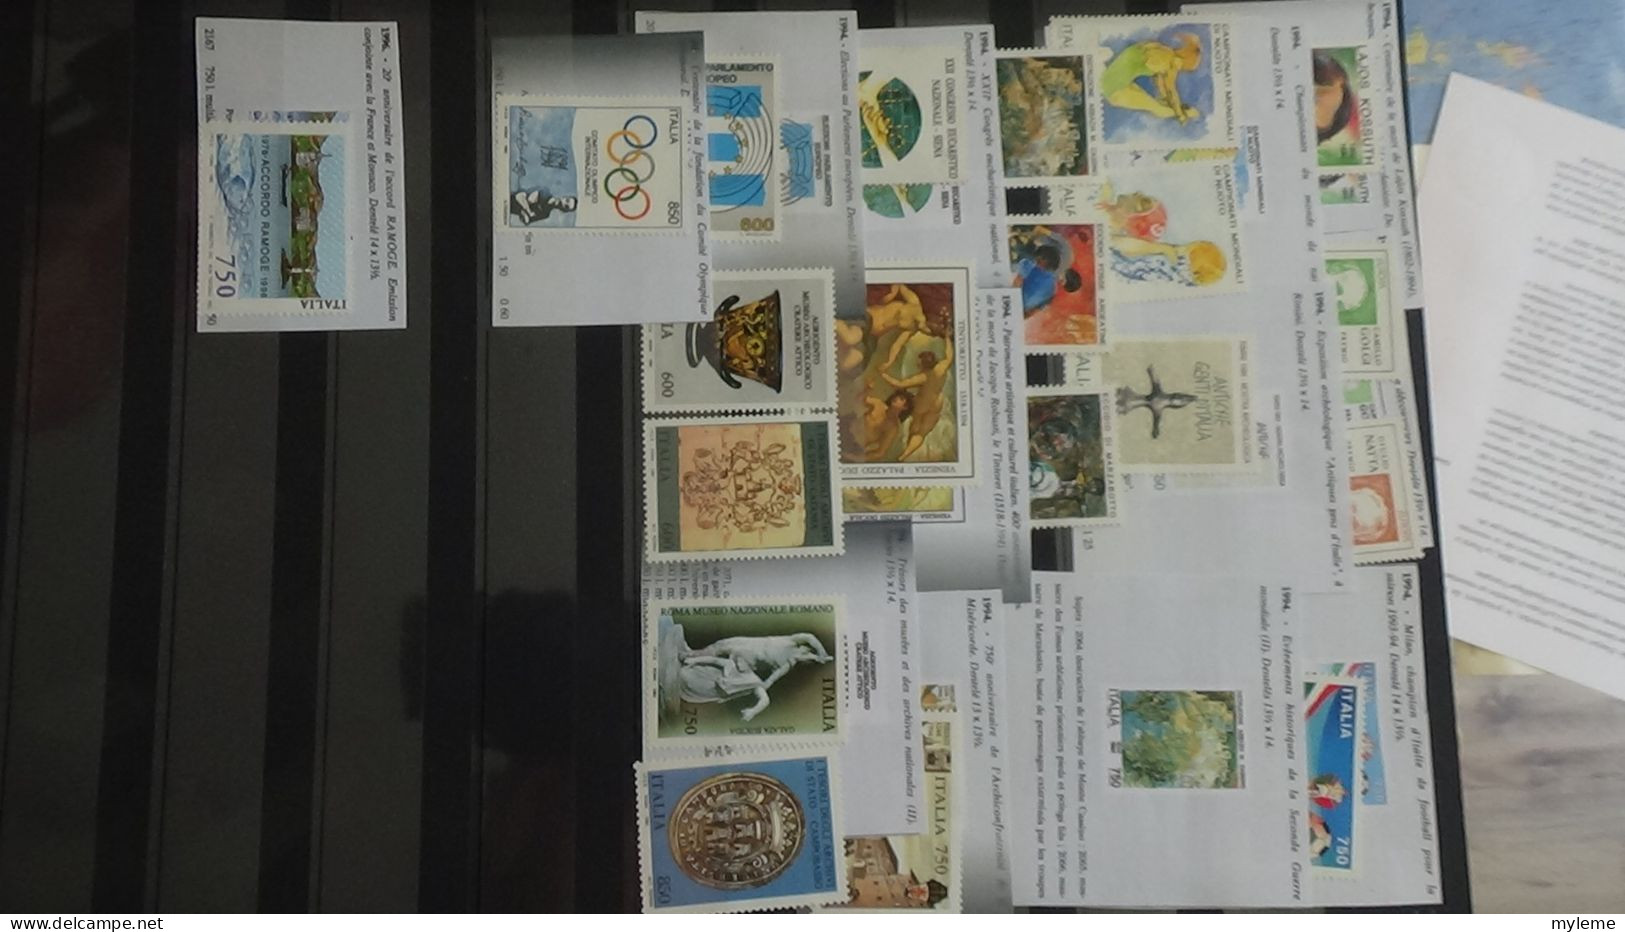 BJ30 Collection de timbres d'Italie avec notices explicatives.  A saisir !!!